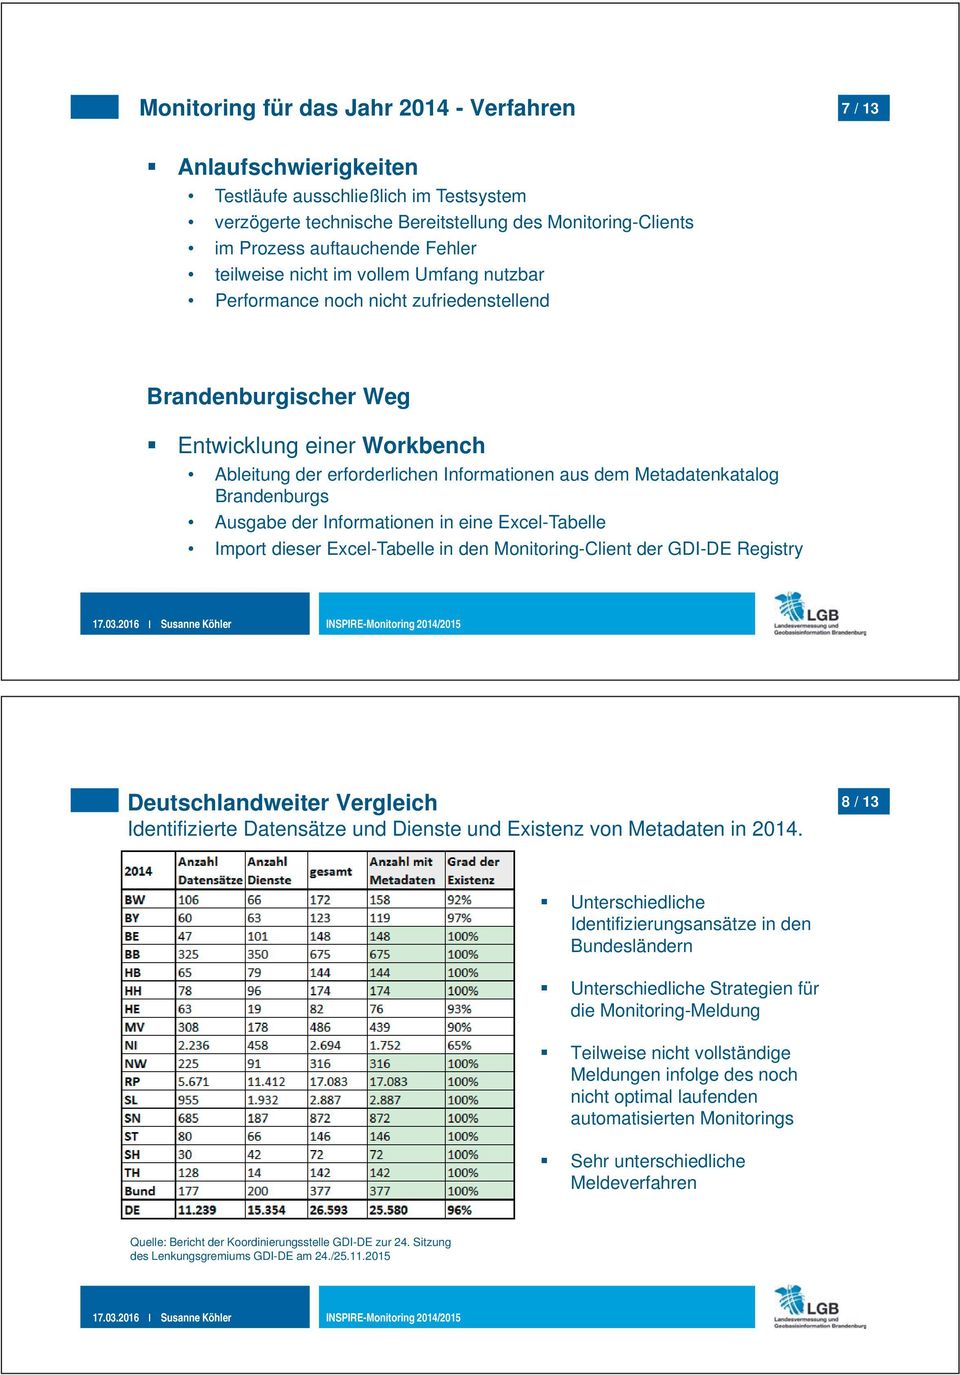 Brandenburgs Ausgabe der Informationen in eine Excel-Tabelle Import dieser Excel-Tabelle in den Monitoring-Client der GDI-DE Registry Deutschlandweiter Vergleich Identifizierte Datensätze und Dienste